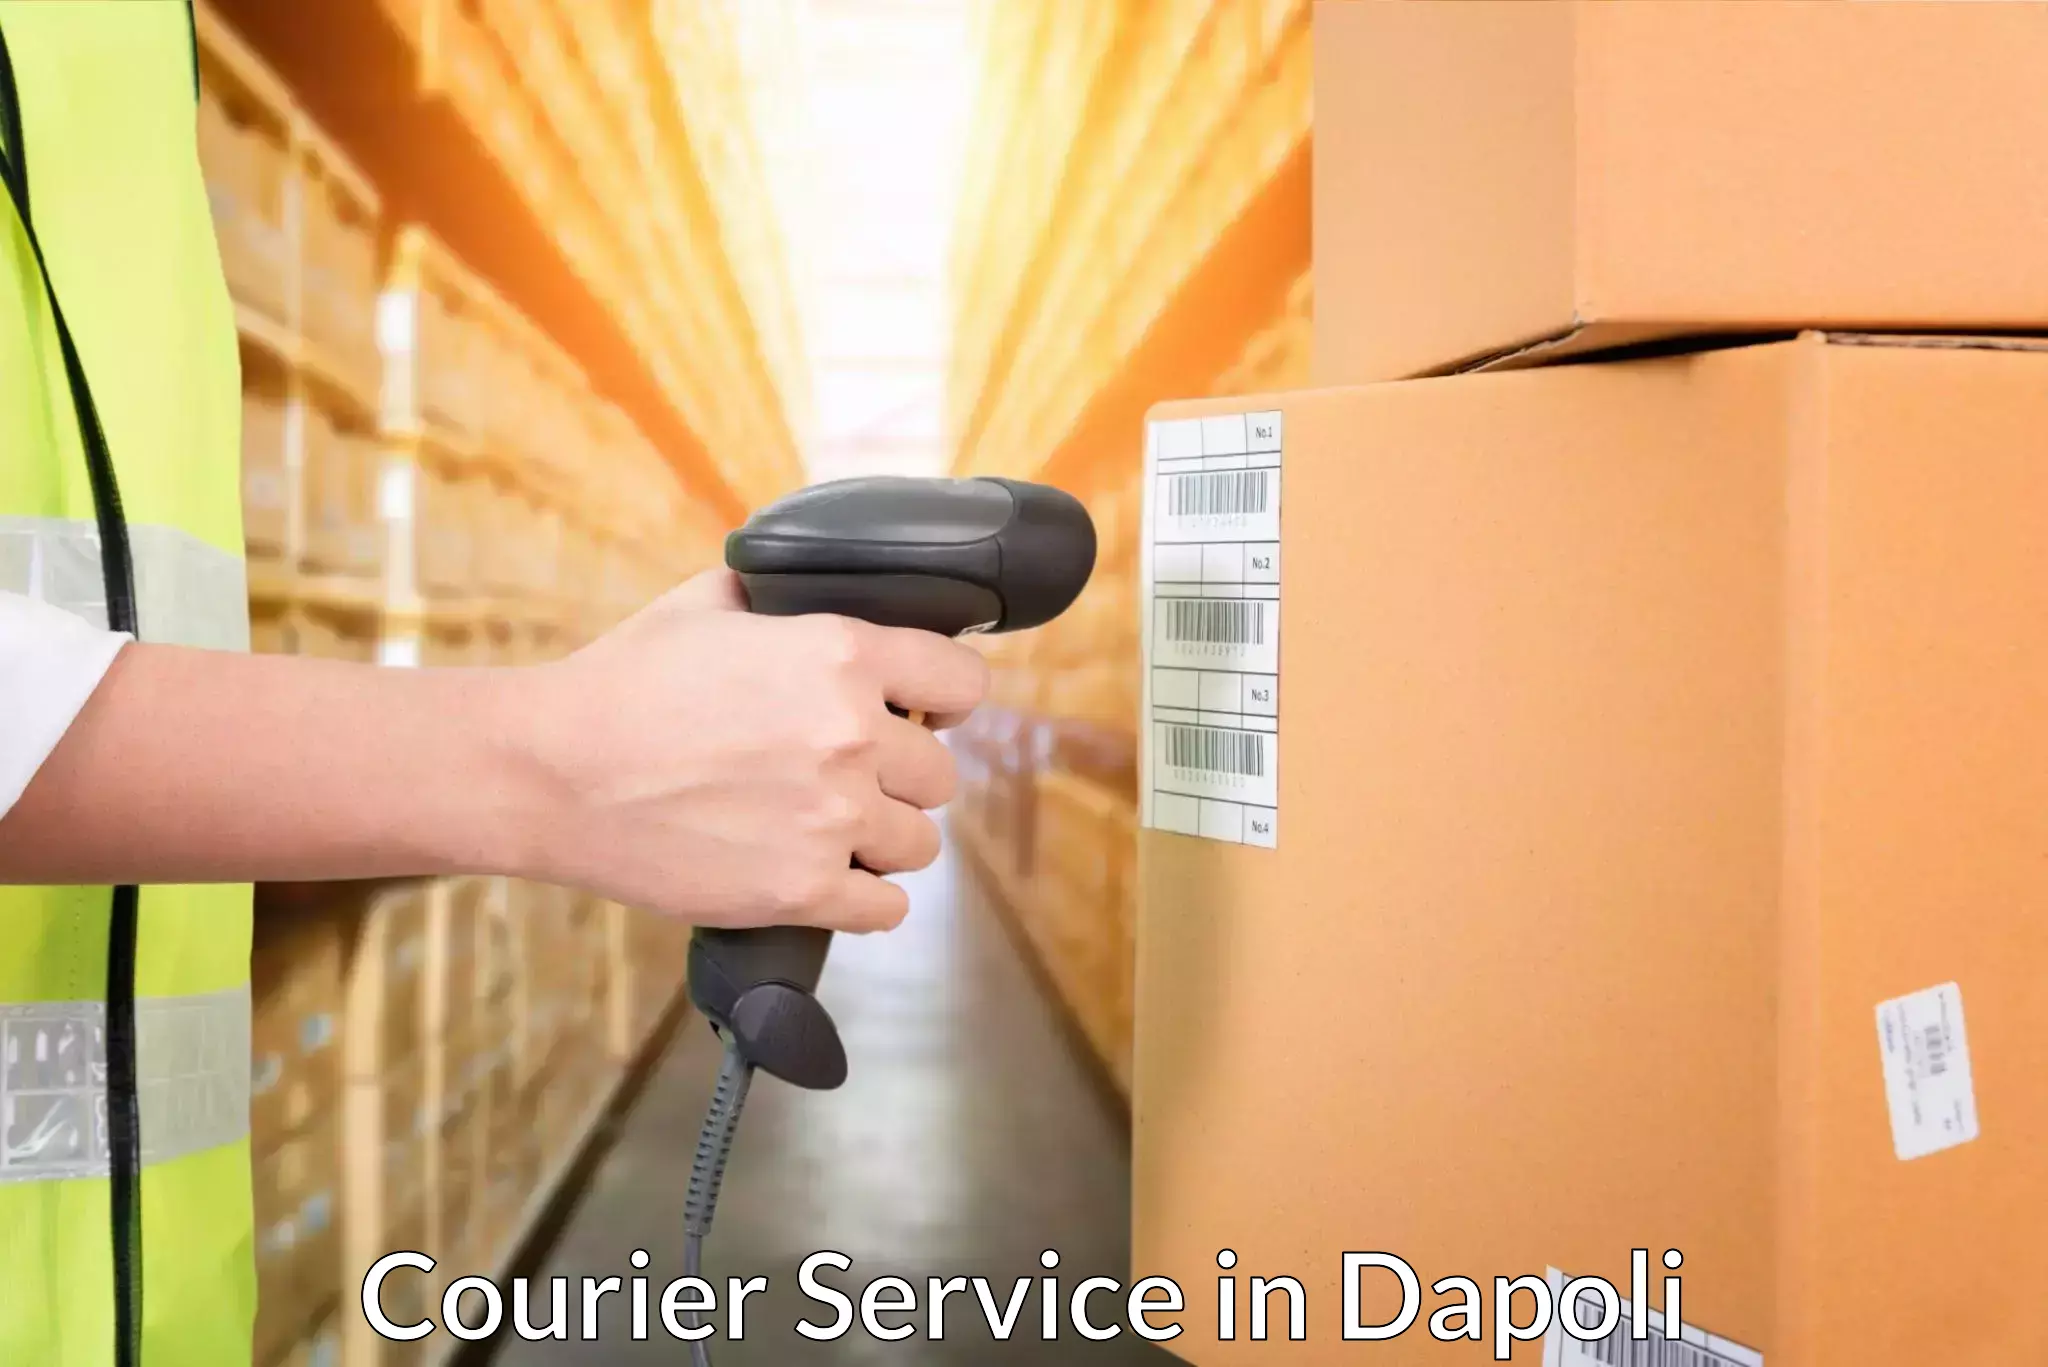 Regular parcel service in Dapoli